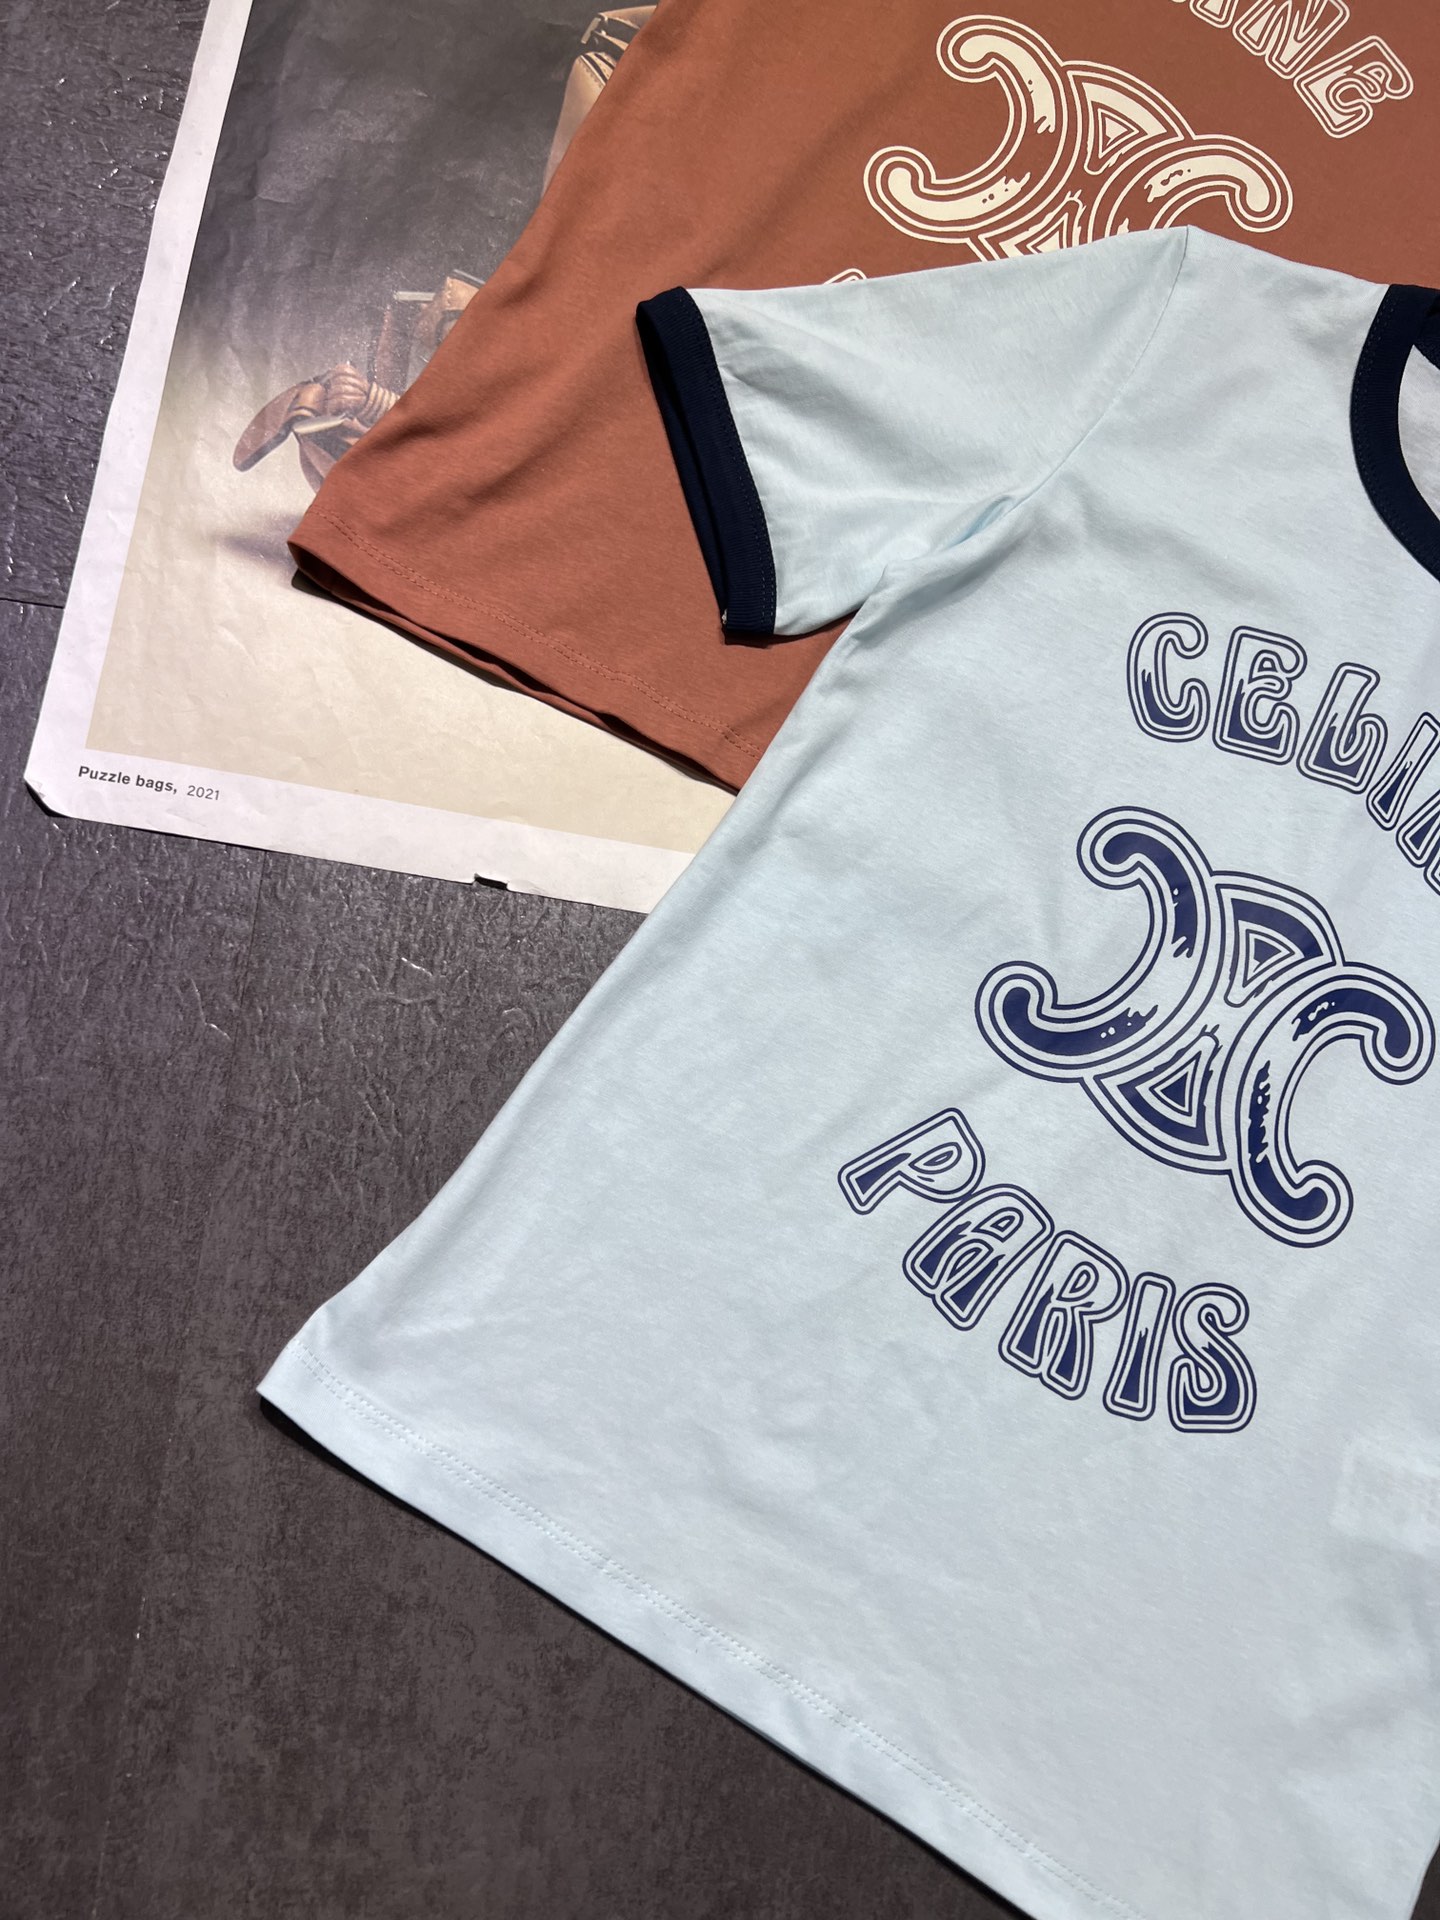 2023定番 人気セリーヌ tシャツ偽物ブランドのロゴ 2色展開_6